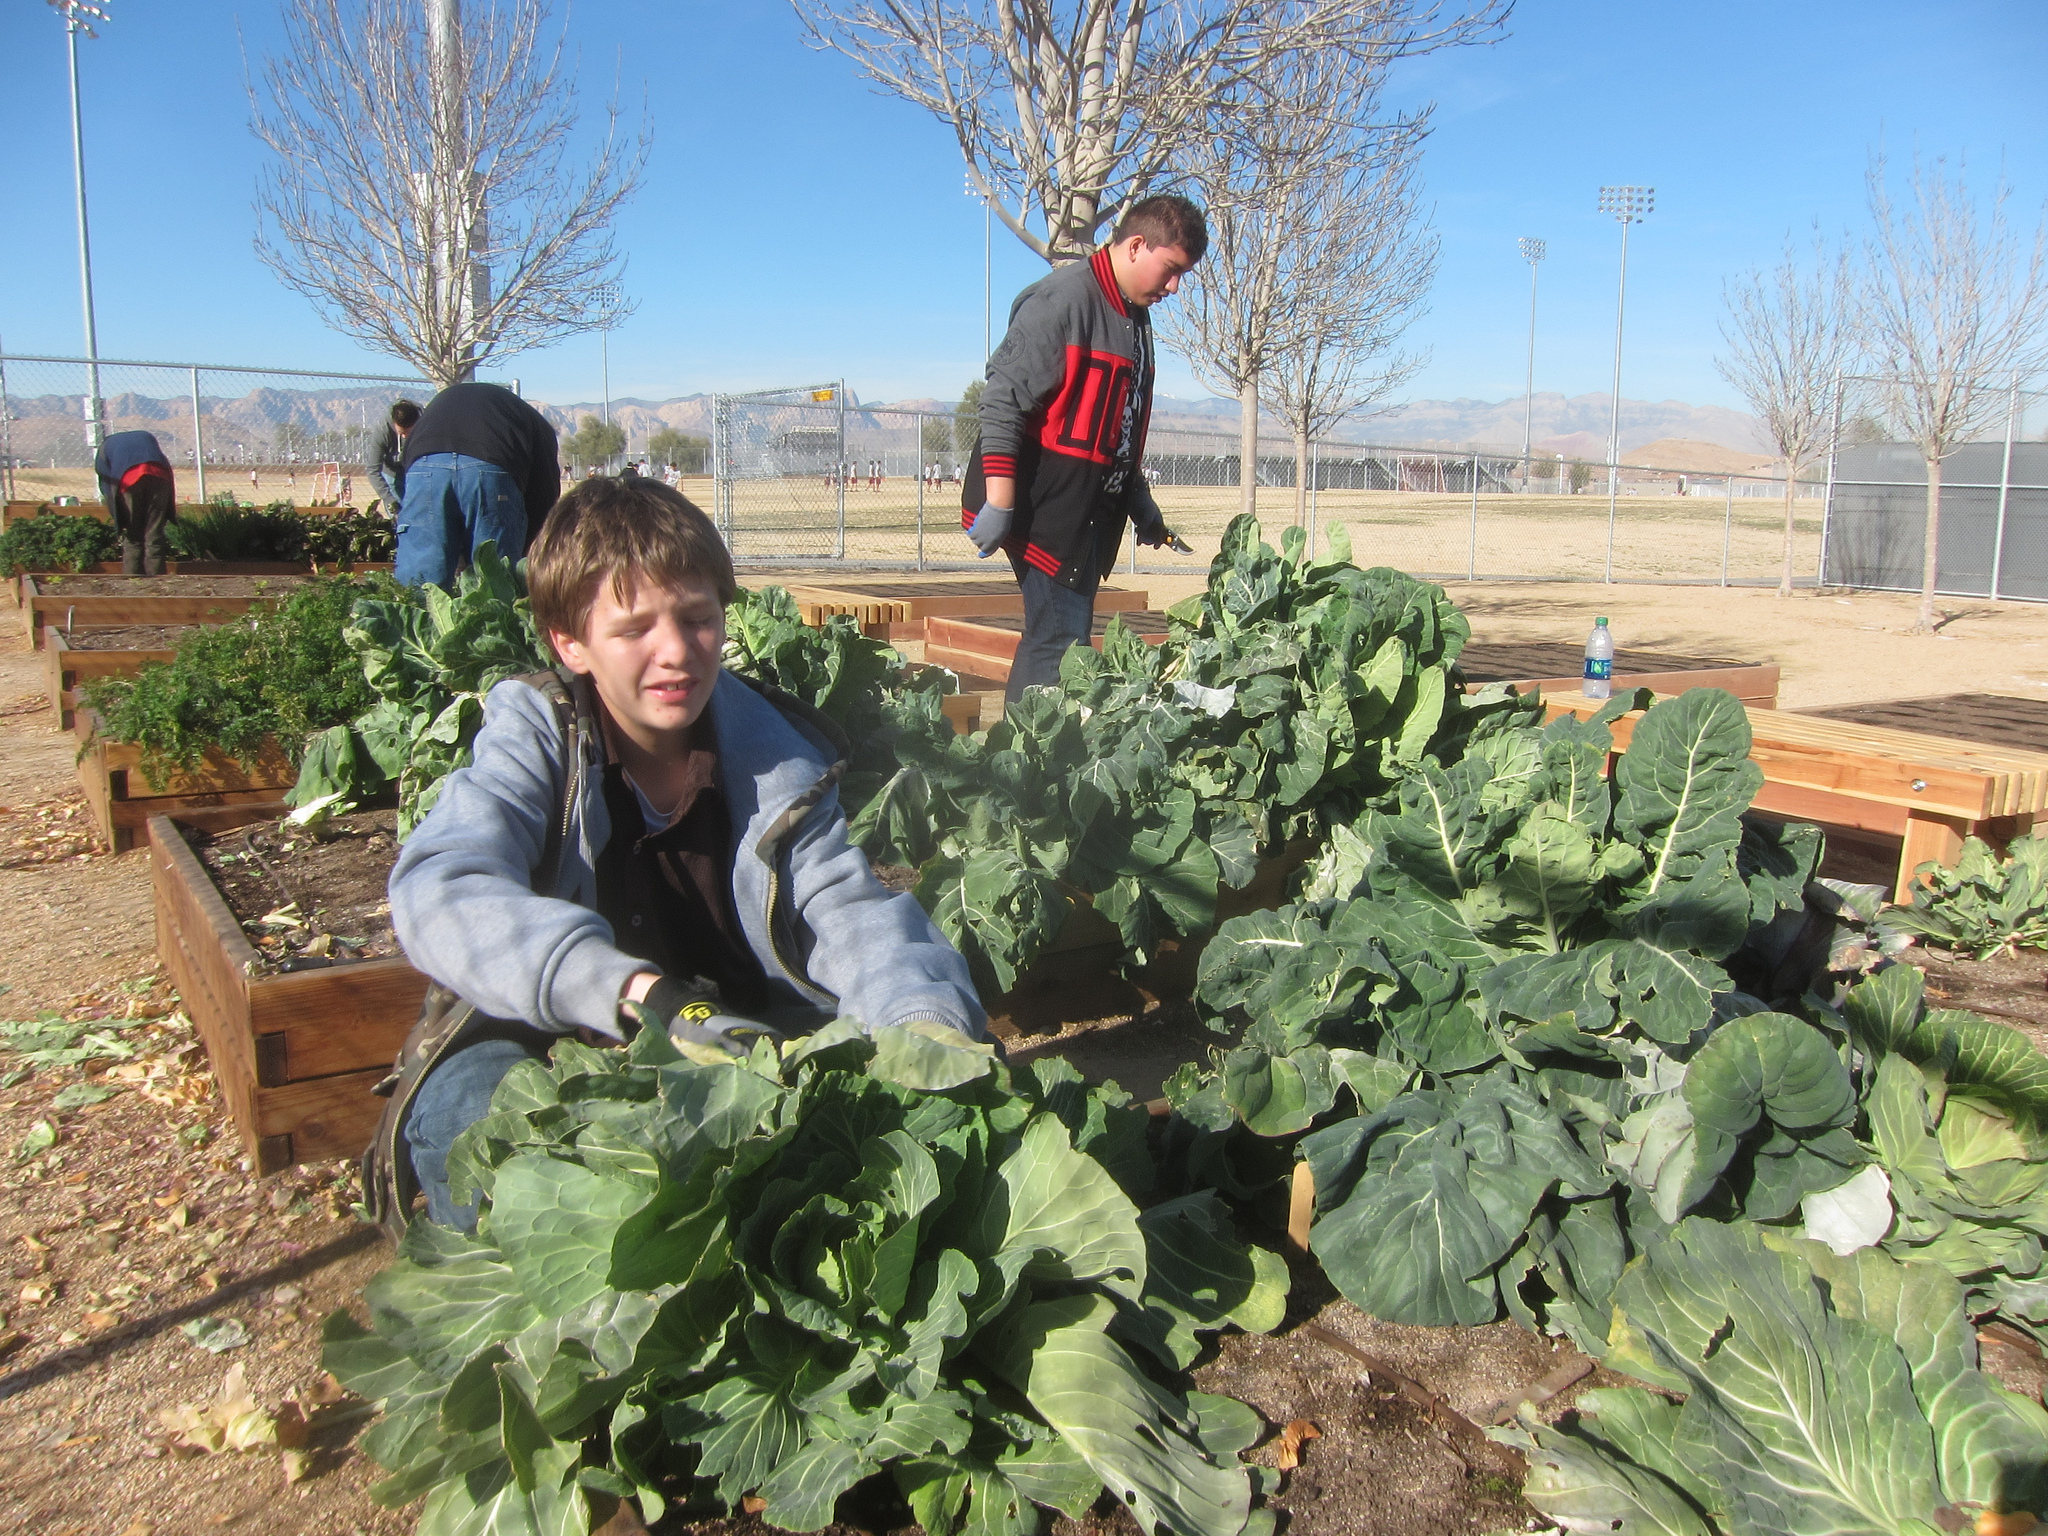 Students harvesting vegetables at Desert Oasis High School in Las Vegas, Nevada